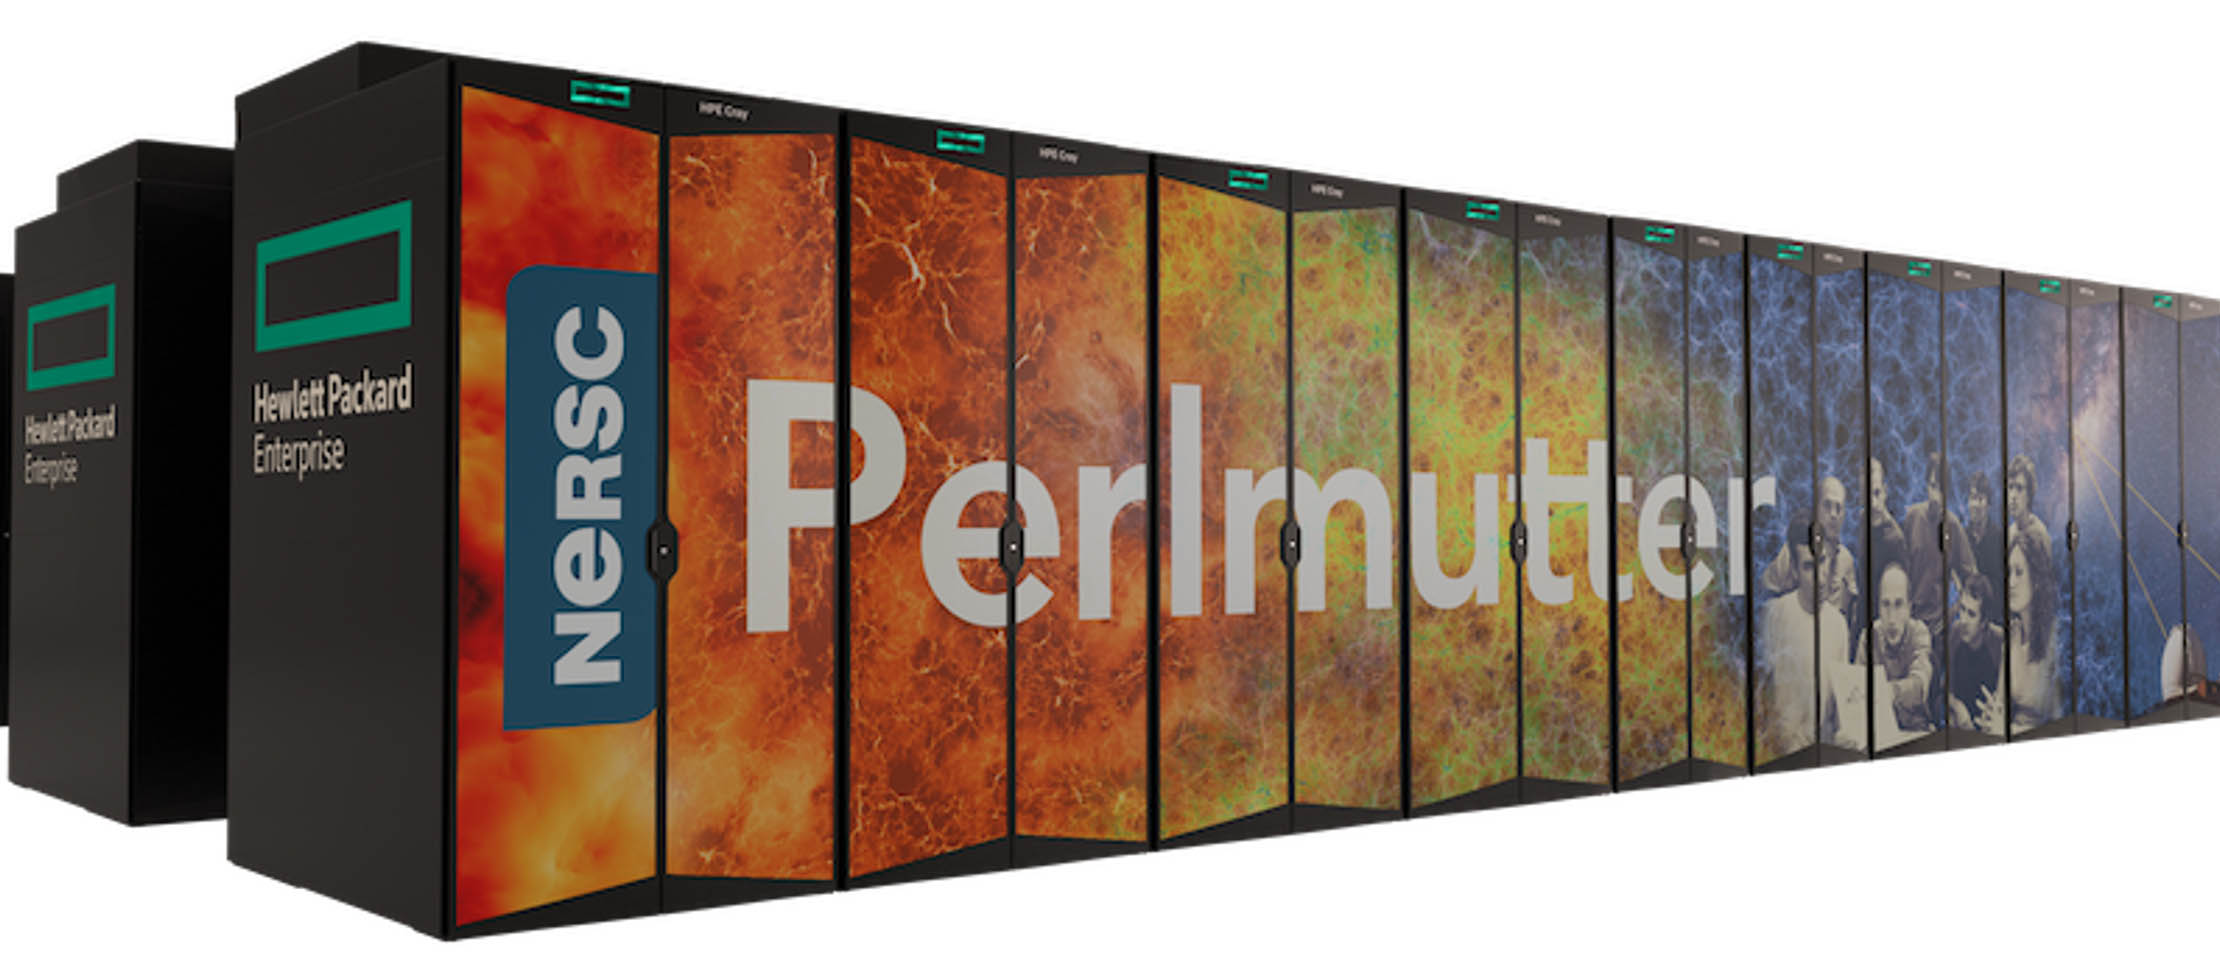 Siêu máy tính Perlmutter nhanh nhất thế giới được xây dựng trên nền tảng HPE Cray Shasta